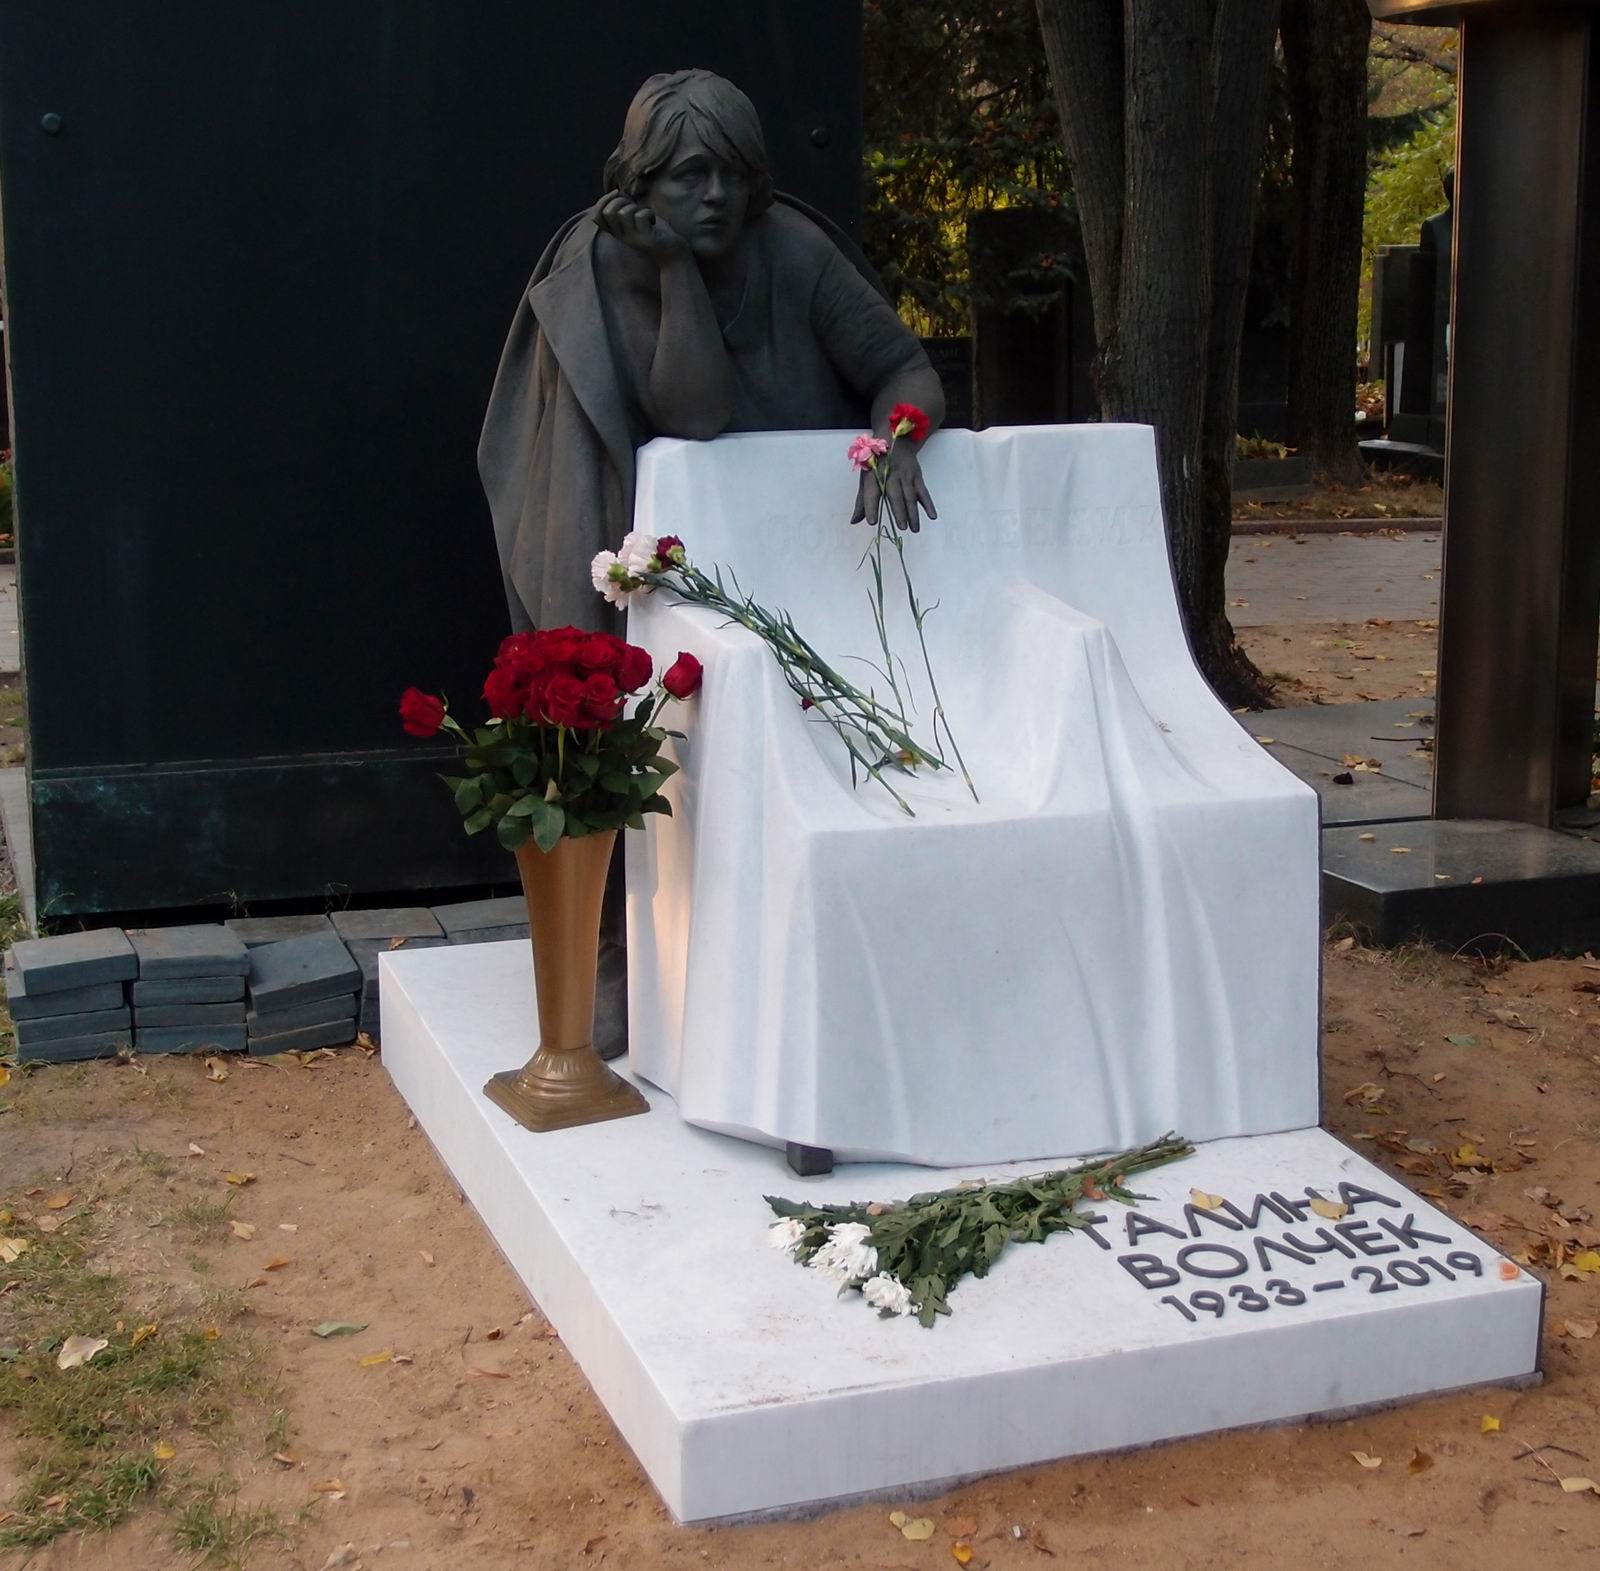 Памятник на могиле Волчек Г.Б. (1933–2019), ск. О.Ершов, худ. А.Боровский, на Новодевичьем кладбище (5–37–10).